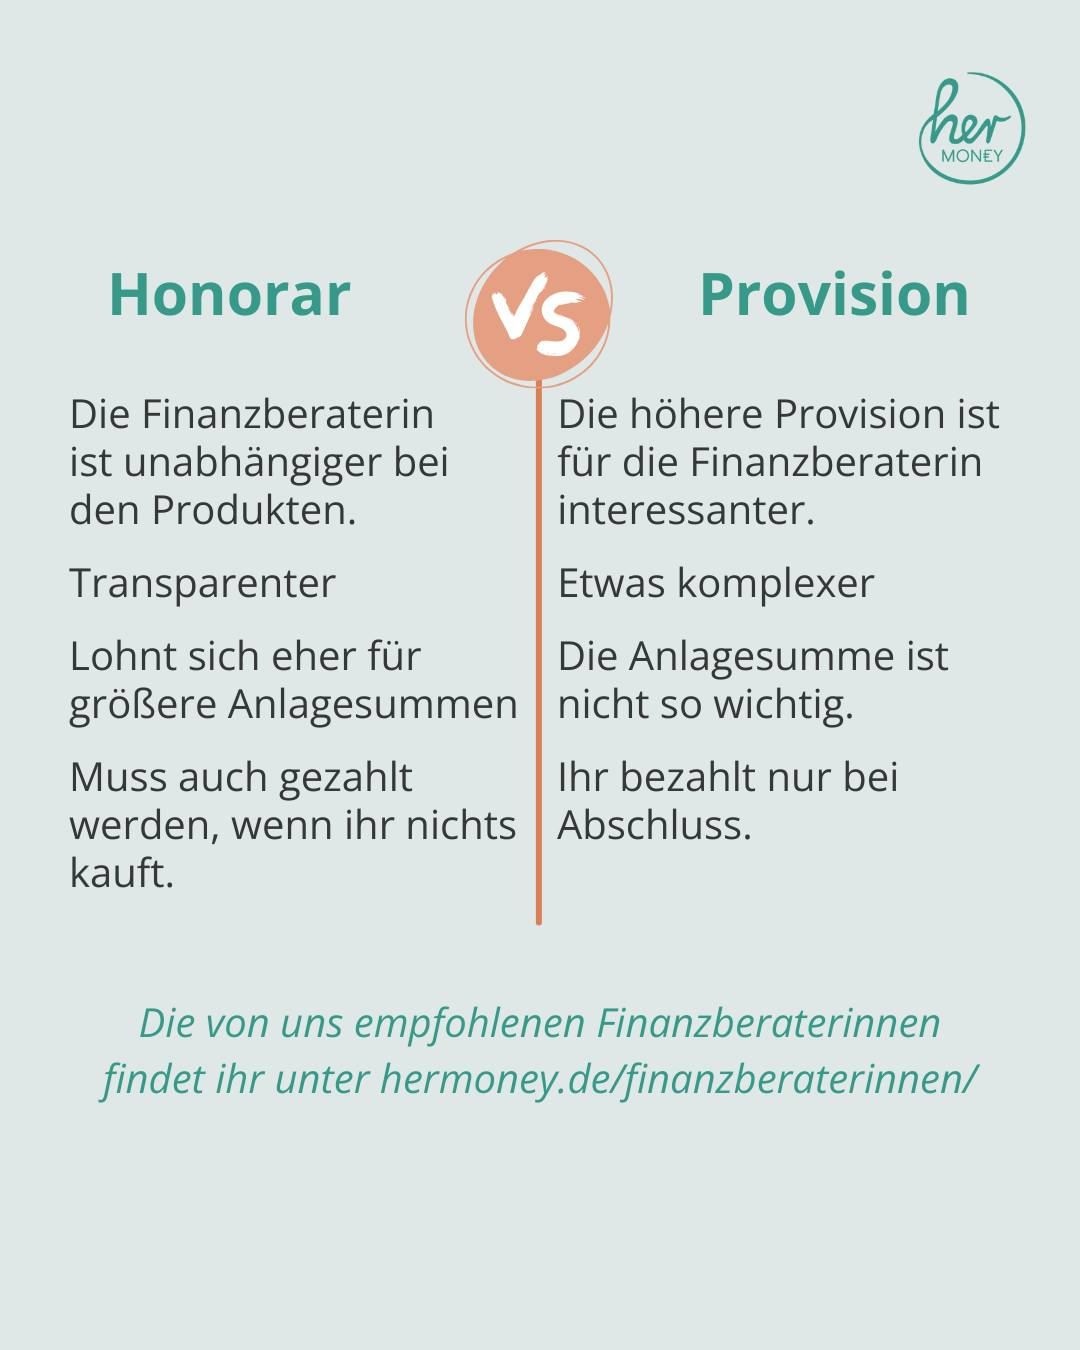 Provision vs. Honorar - Was ist die bessere Finanzberatung?